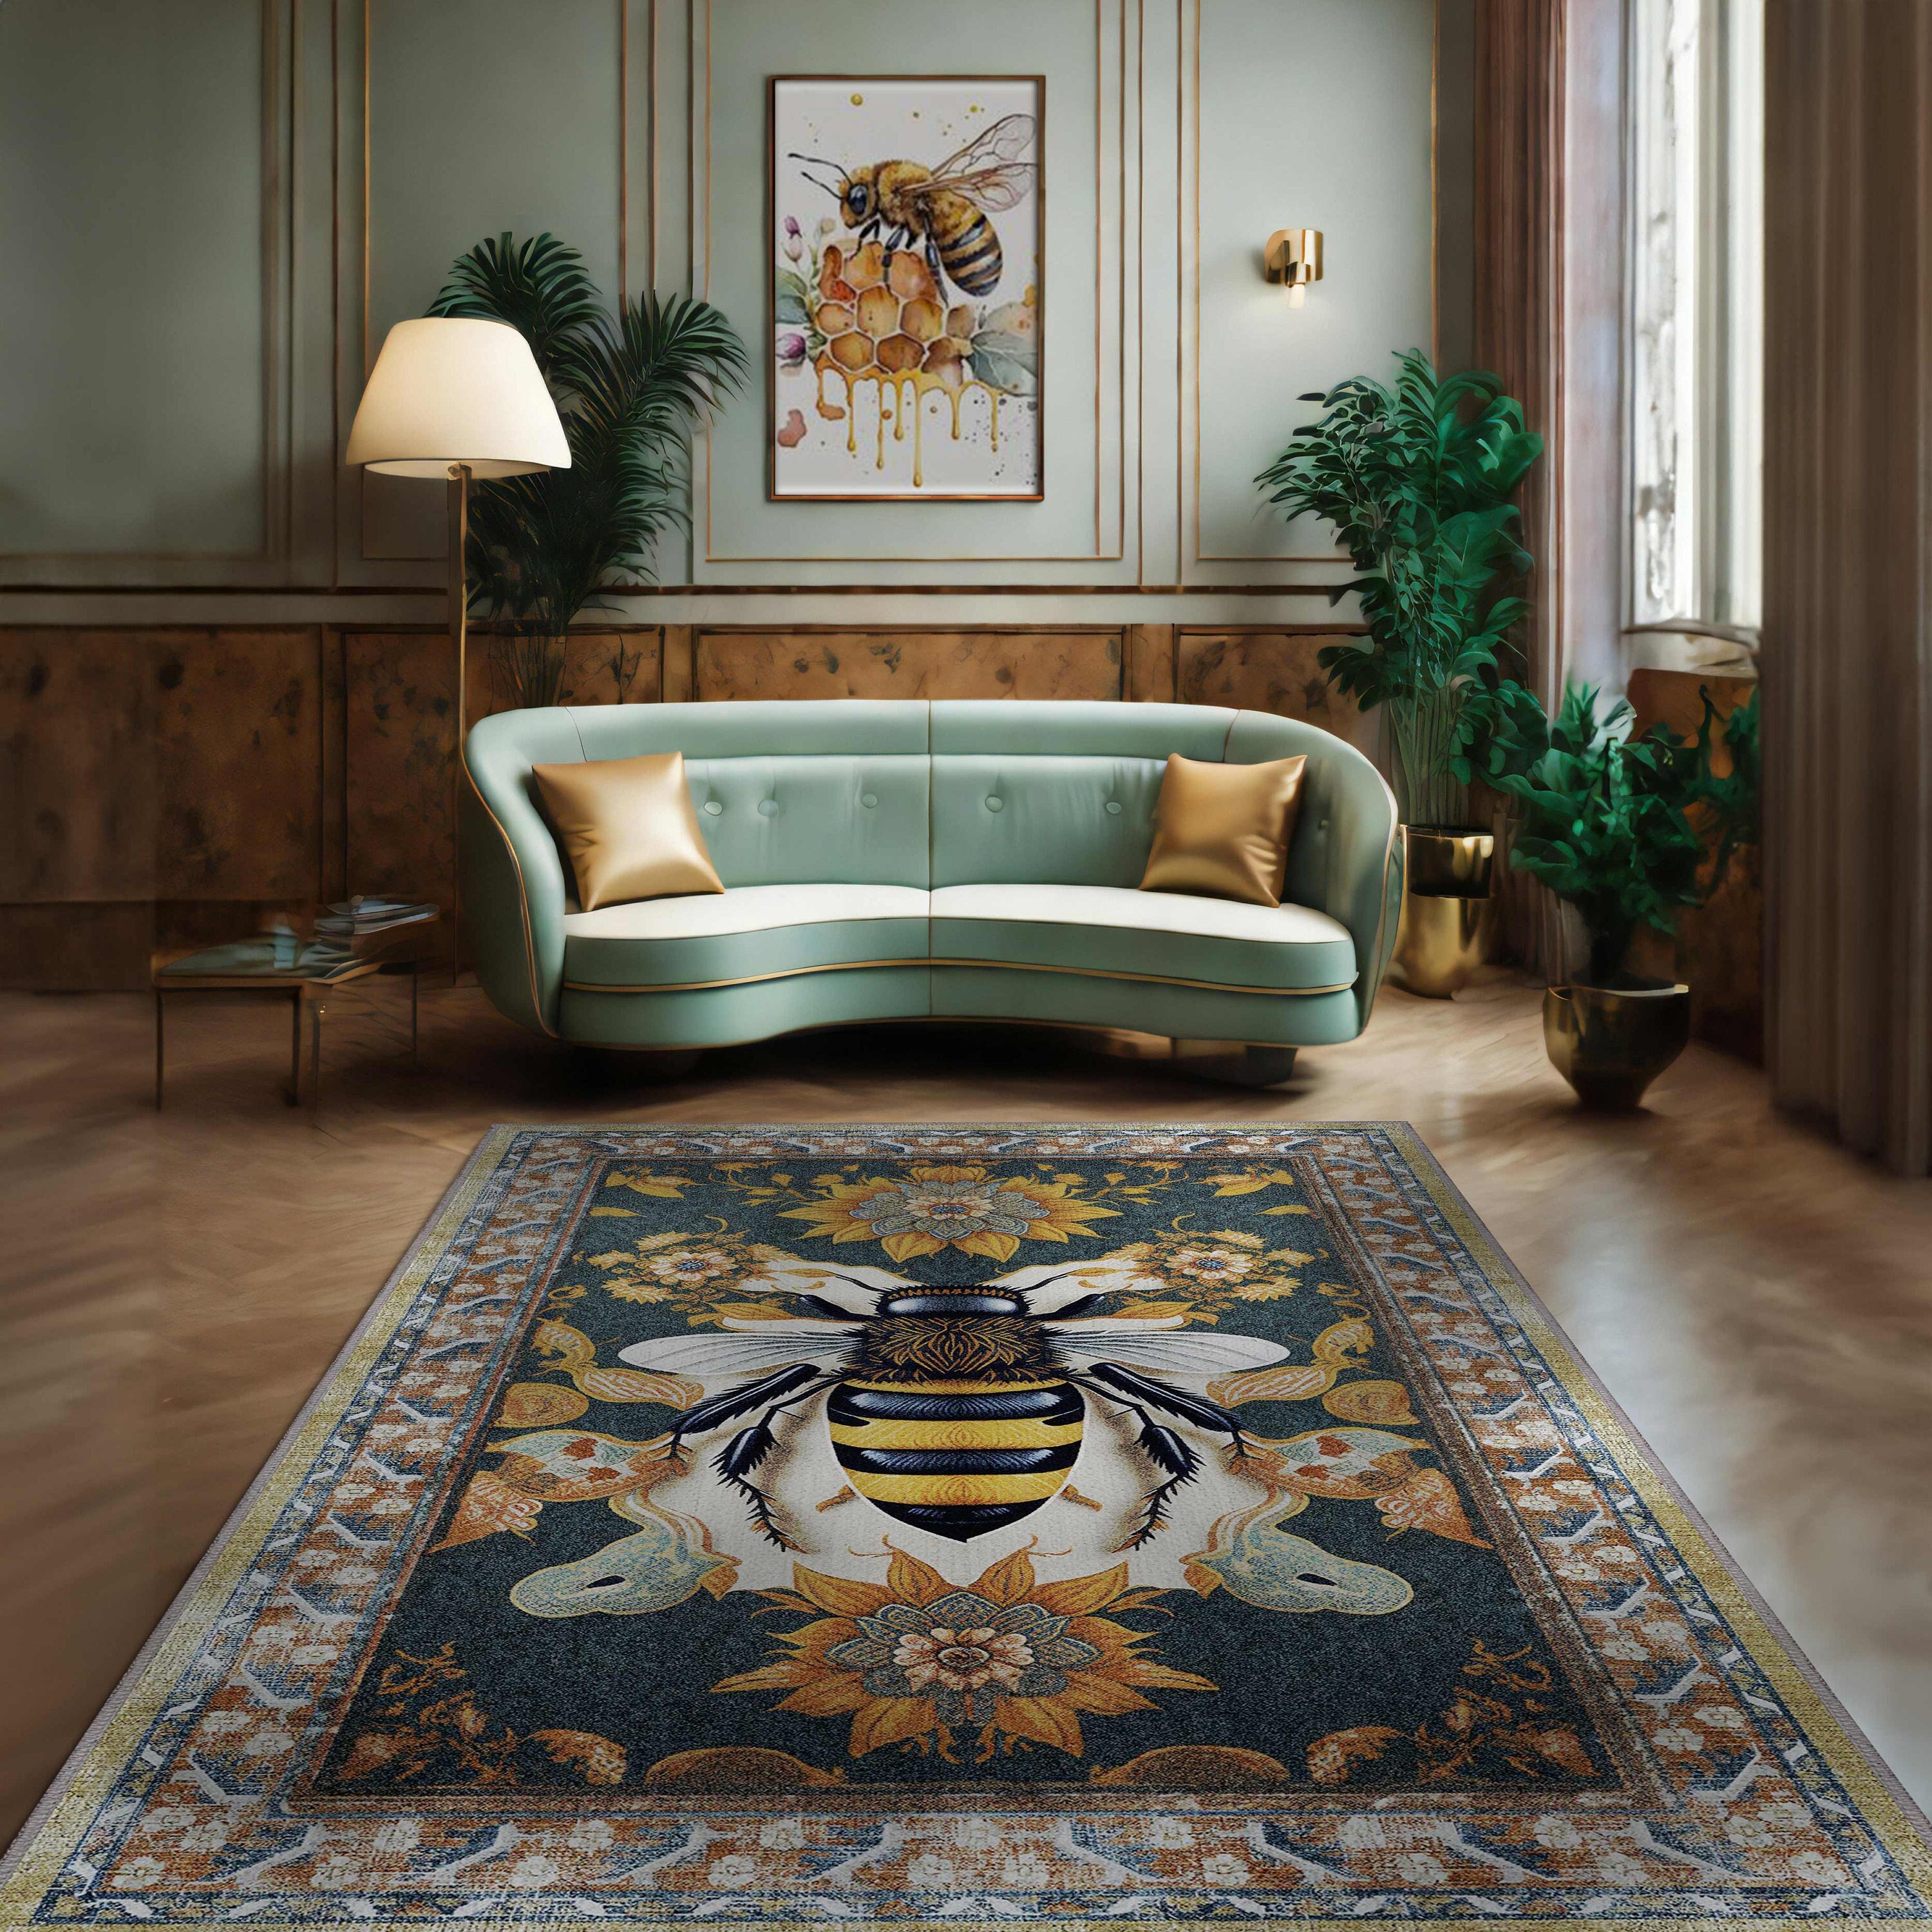 Takashi Murakami Flower Floor Mat Washable Area Runner Rugs Living Room  Carpet